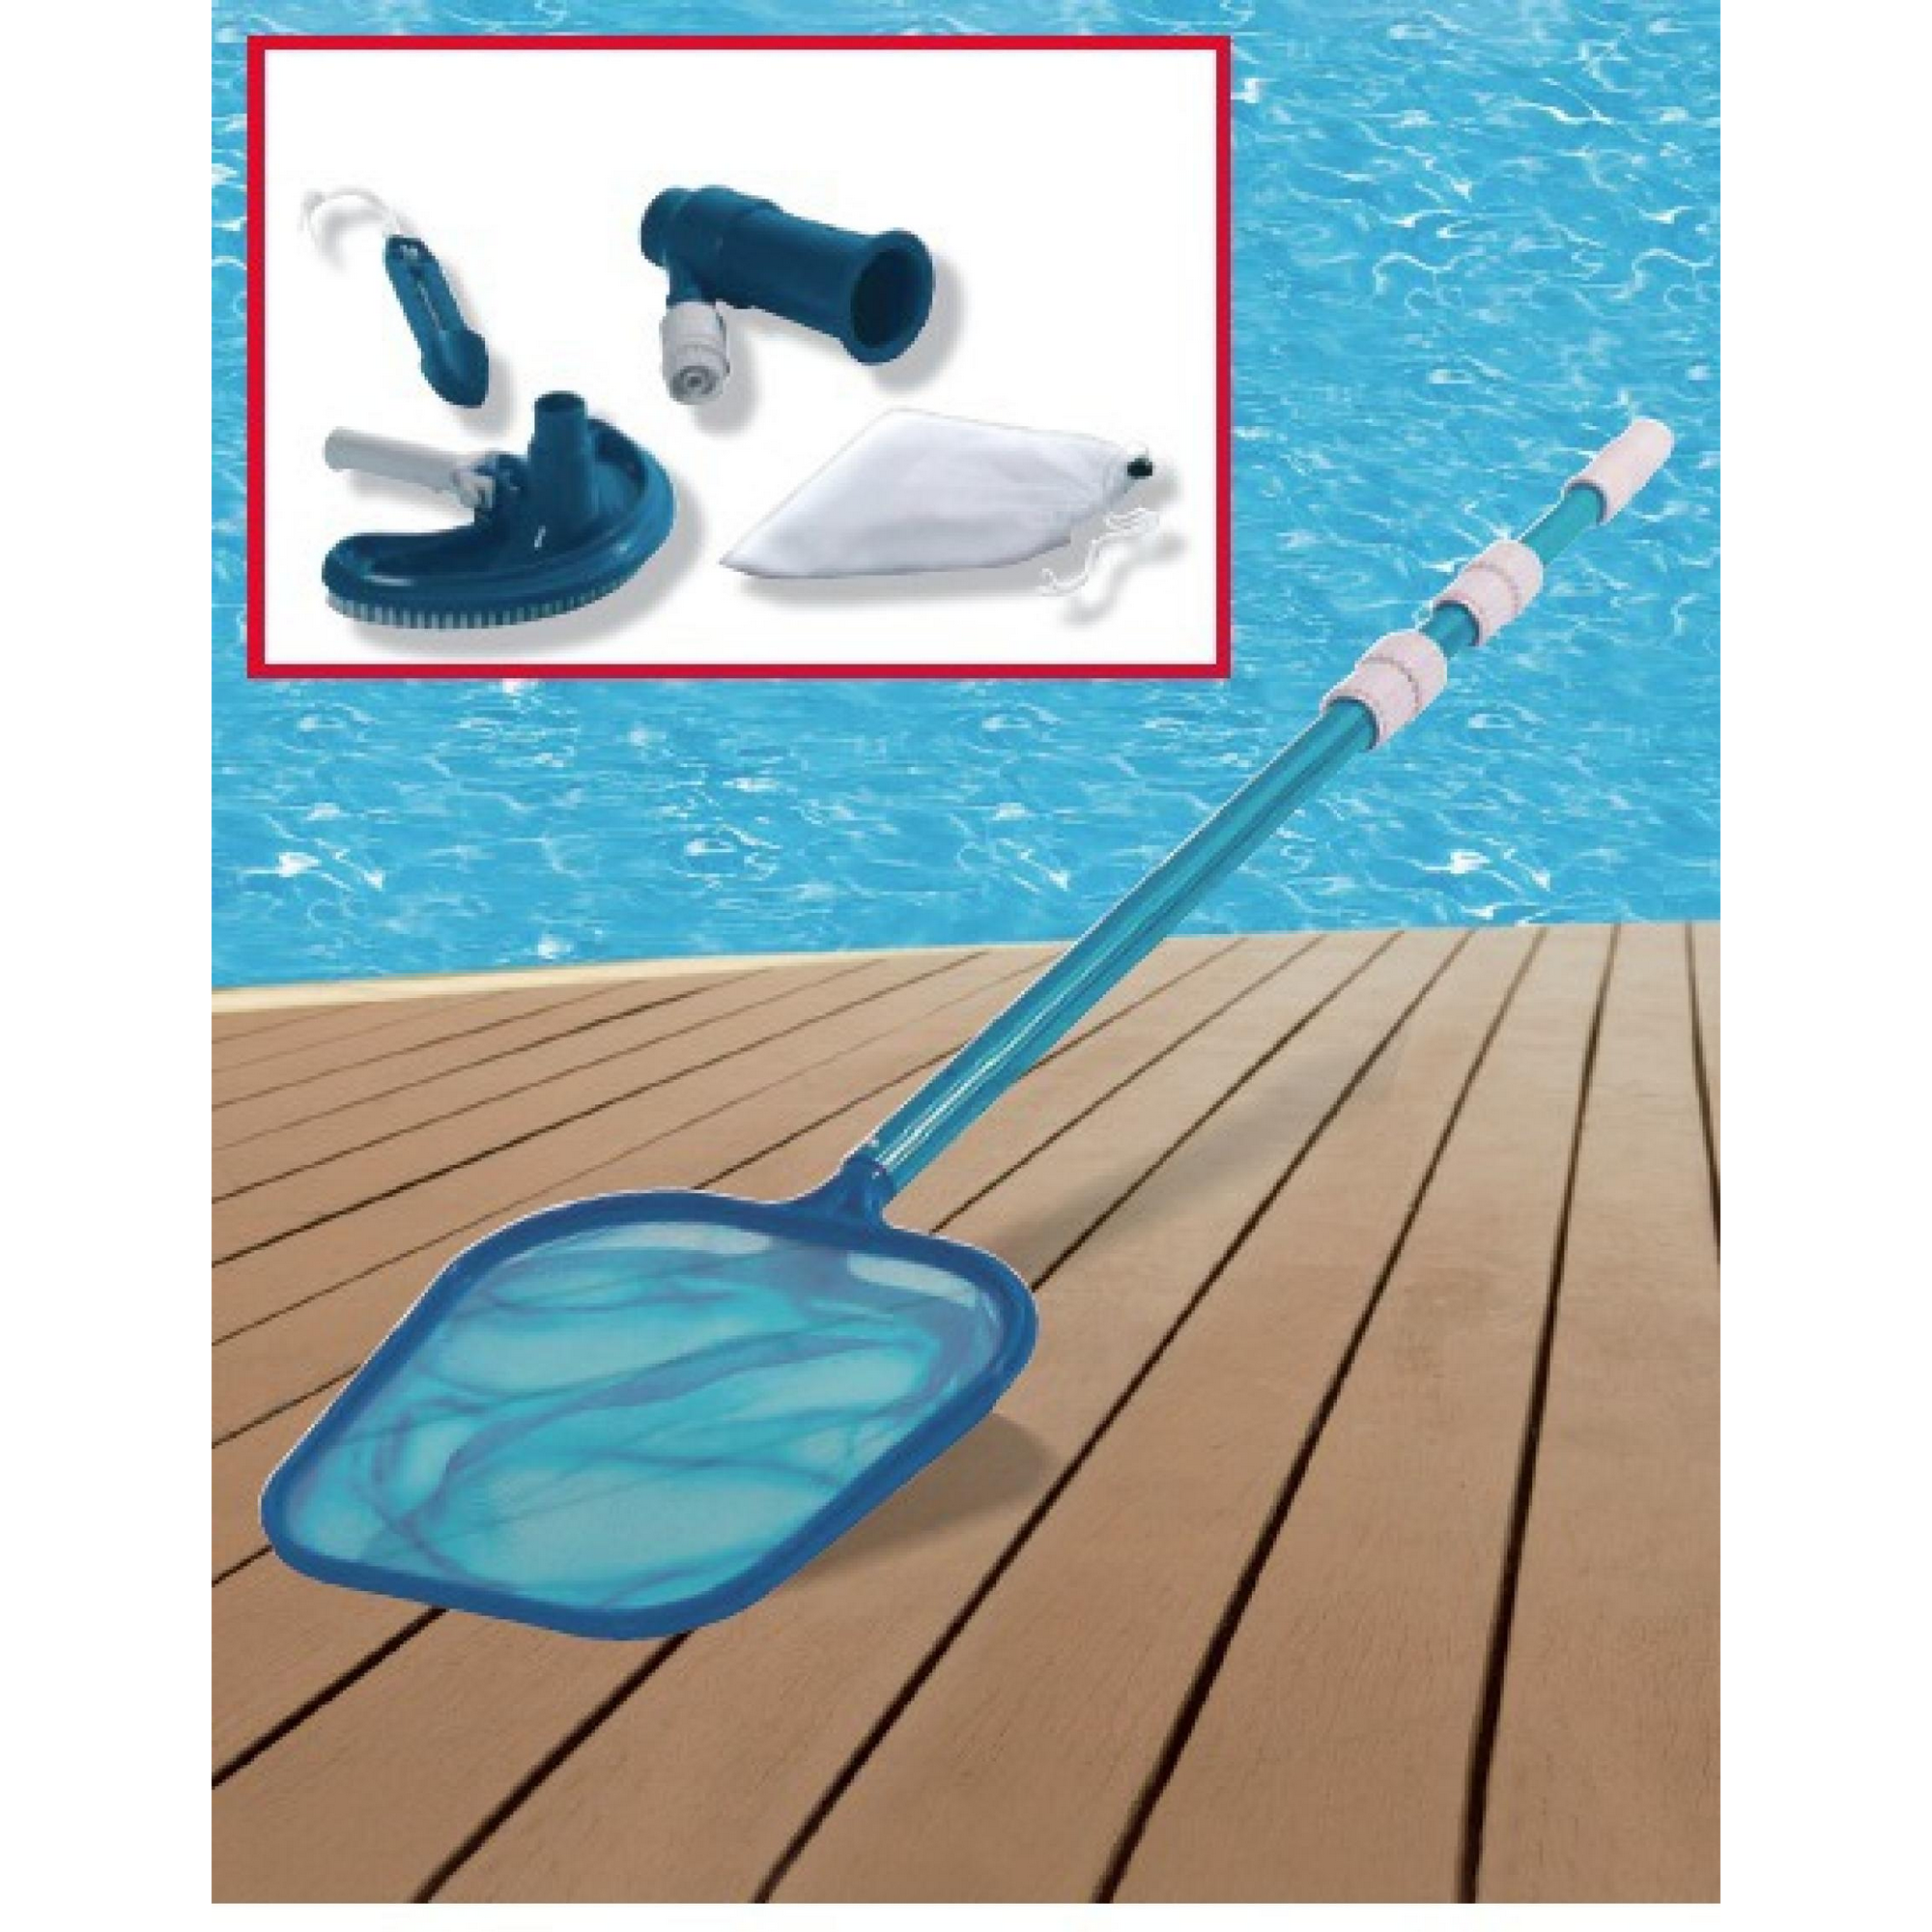 Poolpflege-Set für Pools mit Kartuschenfilteranlage, 4-tlg + product picture